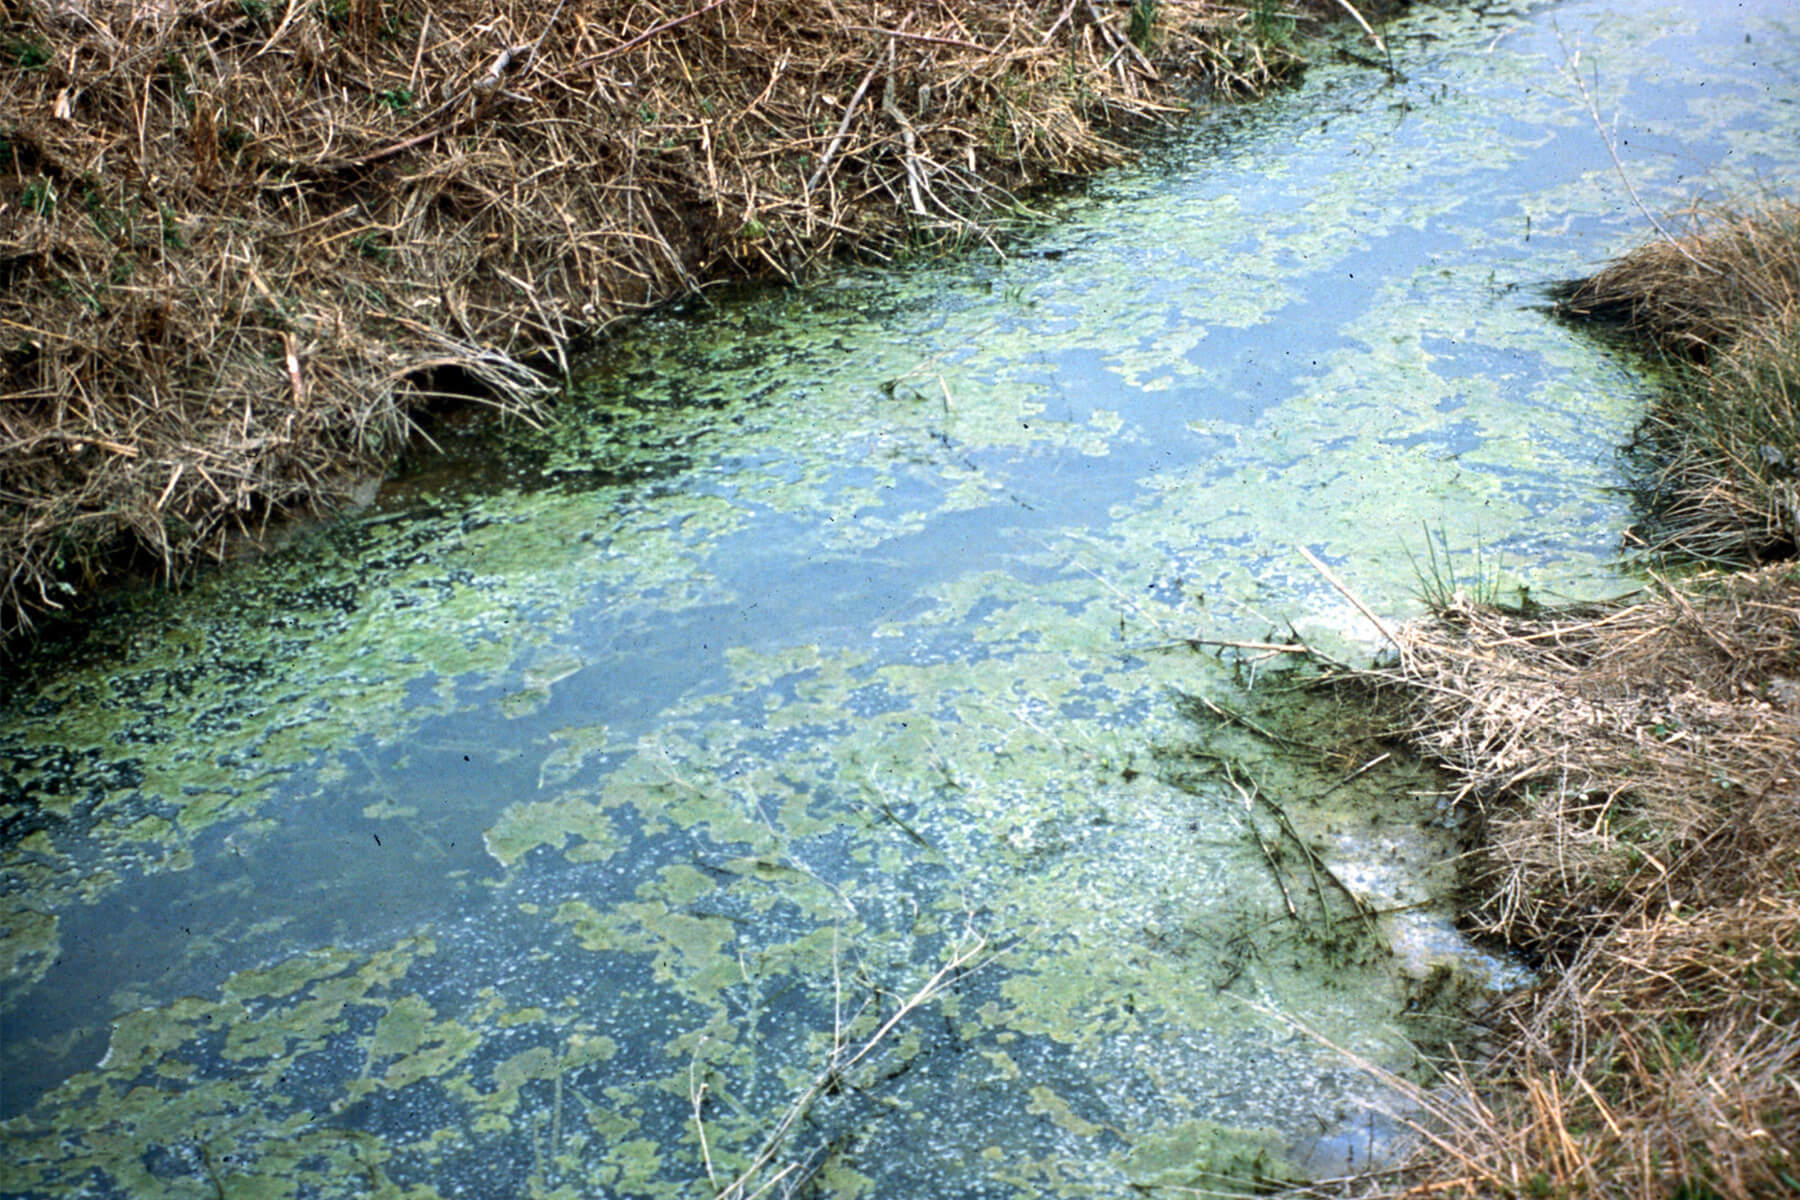 Algae in a stream.